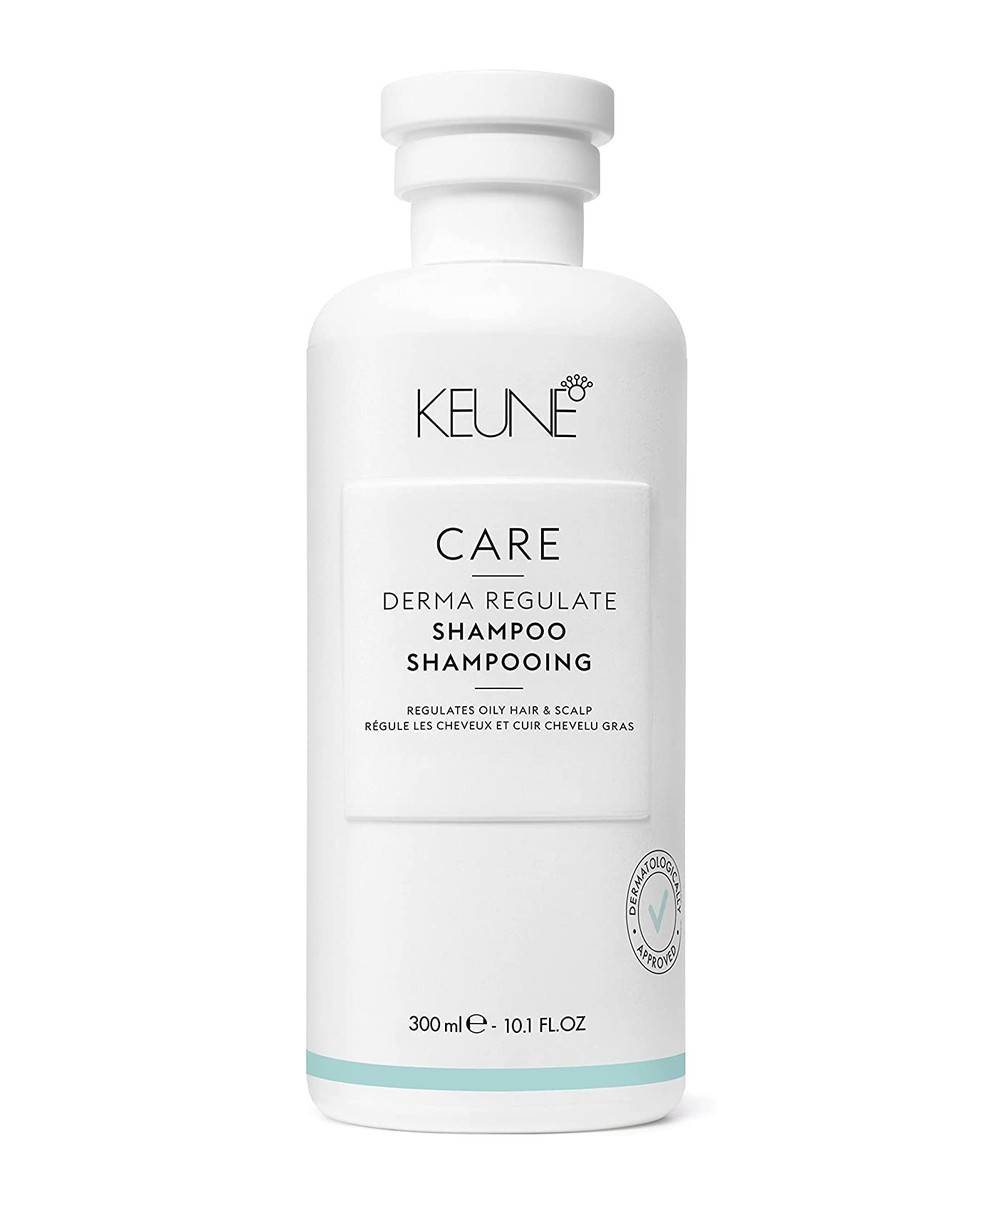 Care Derma Regulate Shampoo, Keune — Foto: Reprodução/ Amazon